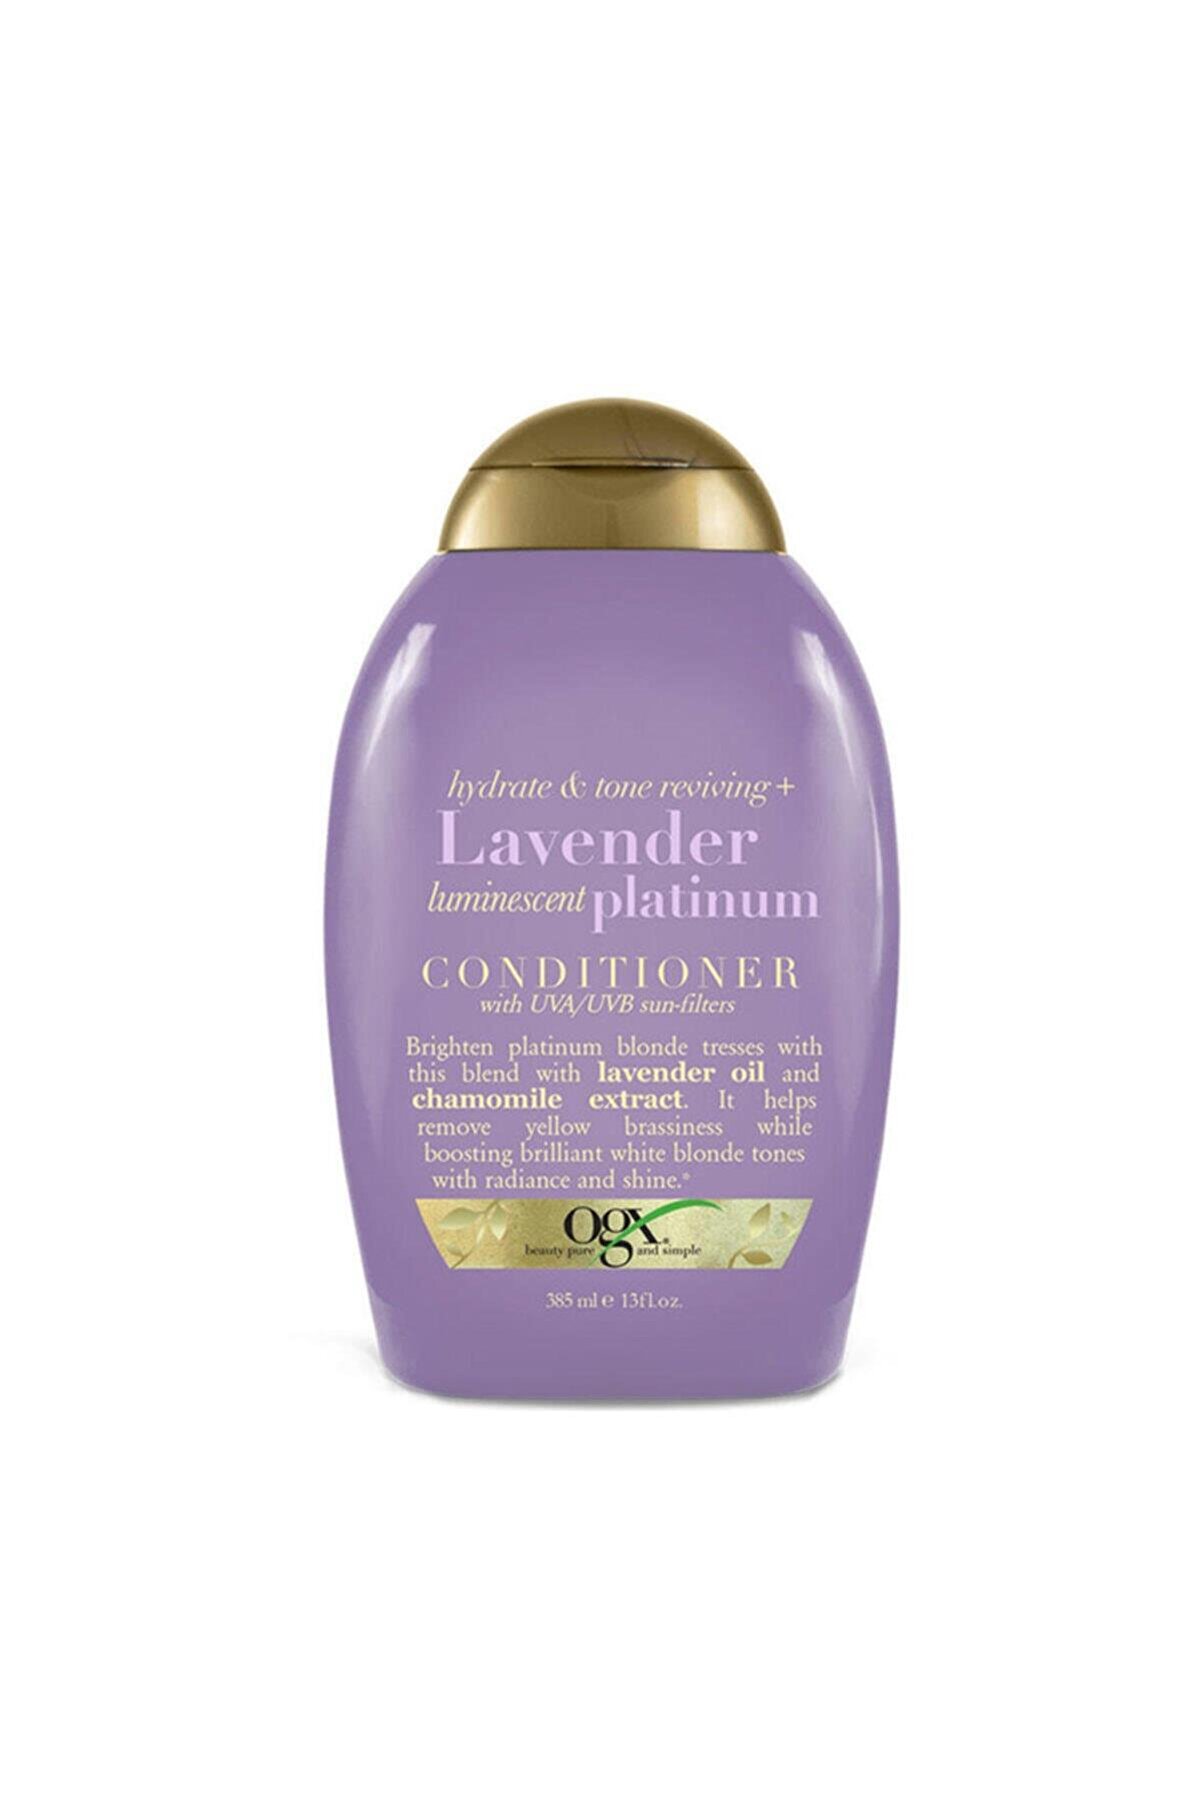 OGX Lavender Platınıum Sülfatsız Saç Bakım Kremi 385ml